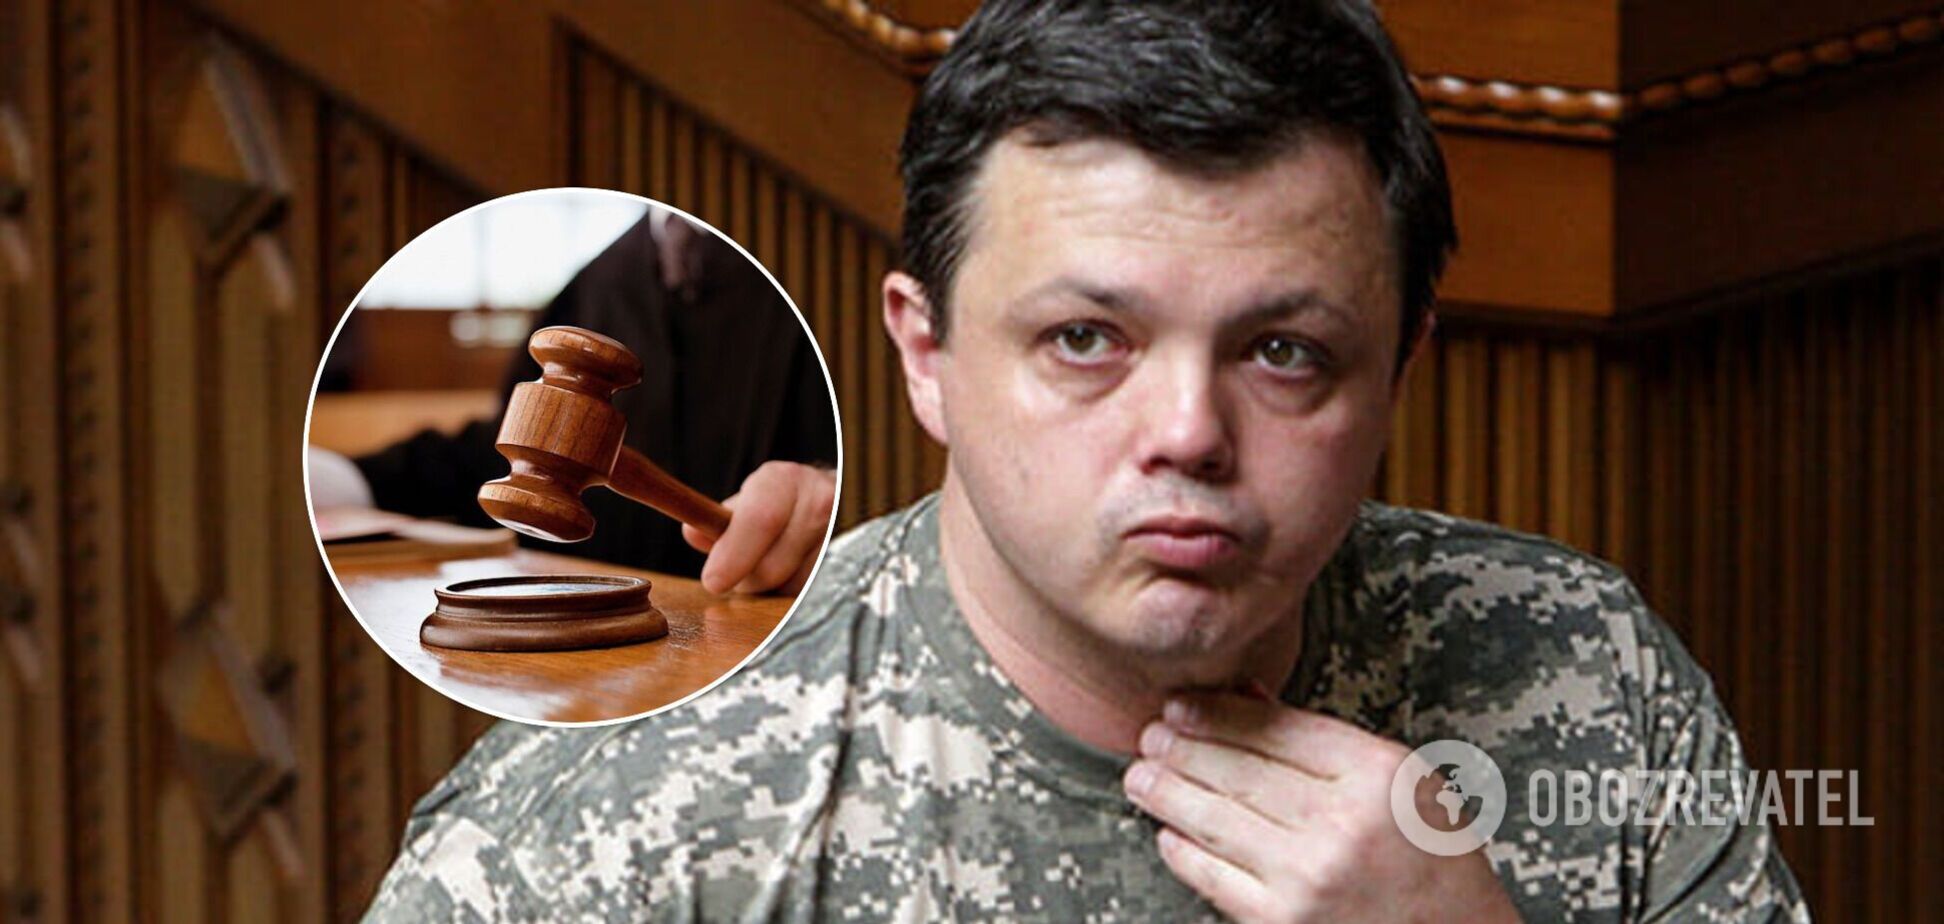 Семенченко в Крыму судили за двойное убийство, – генерал полиции